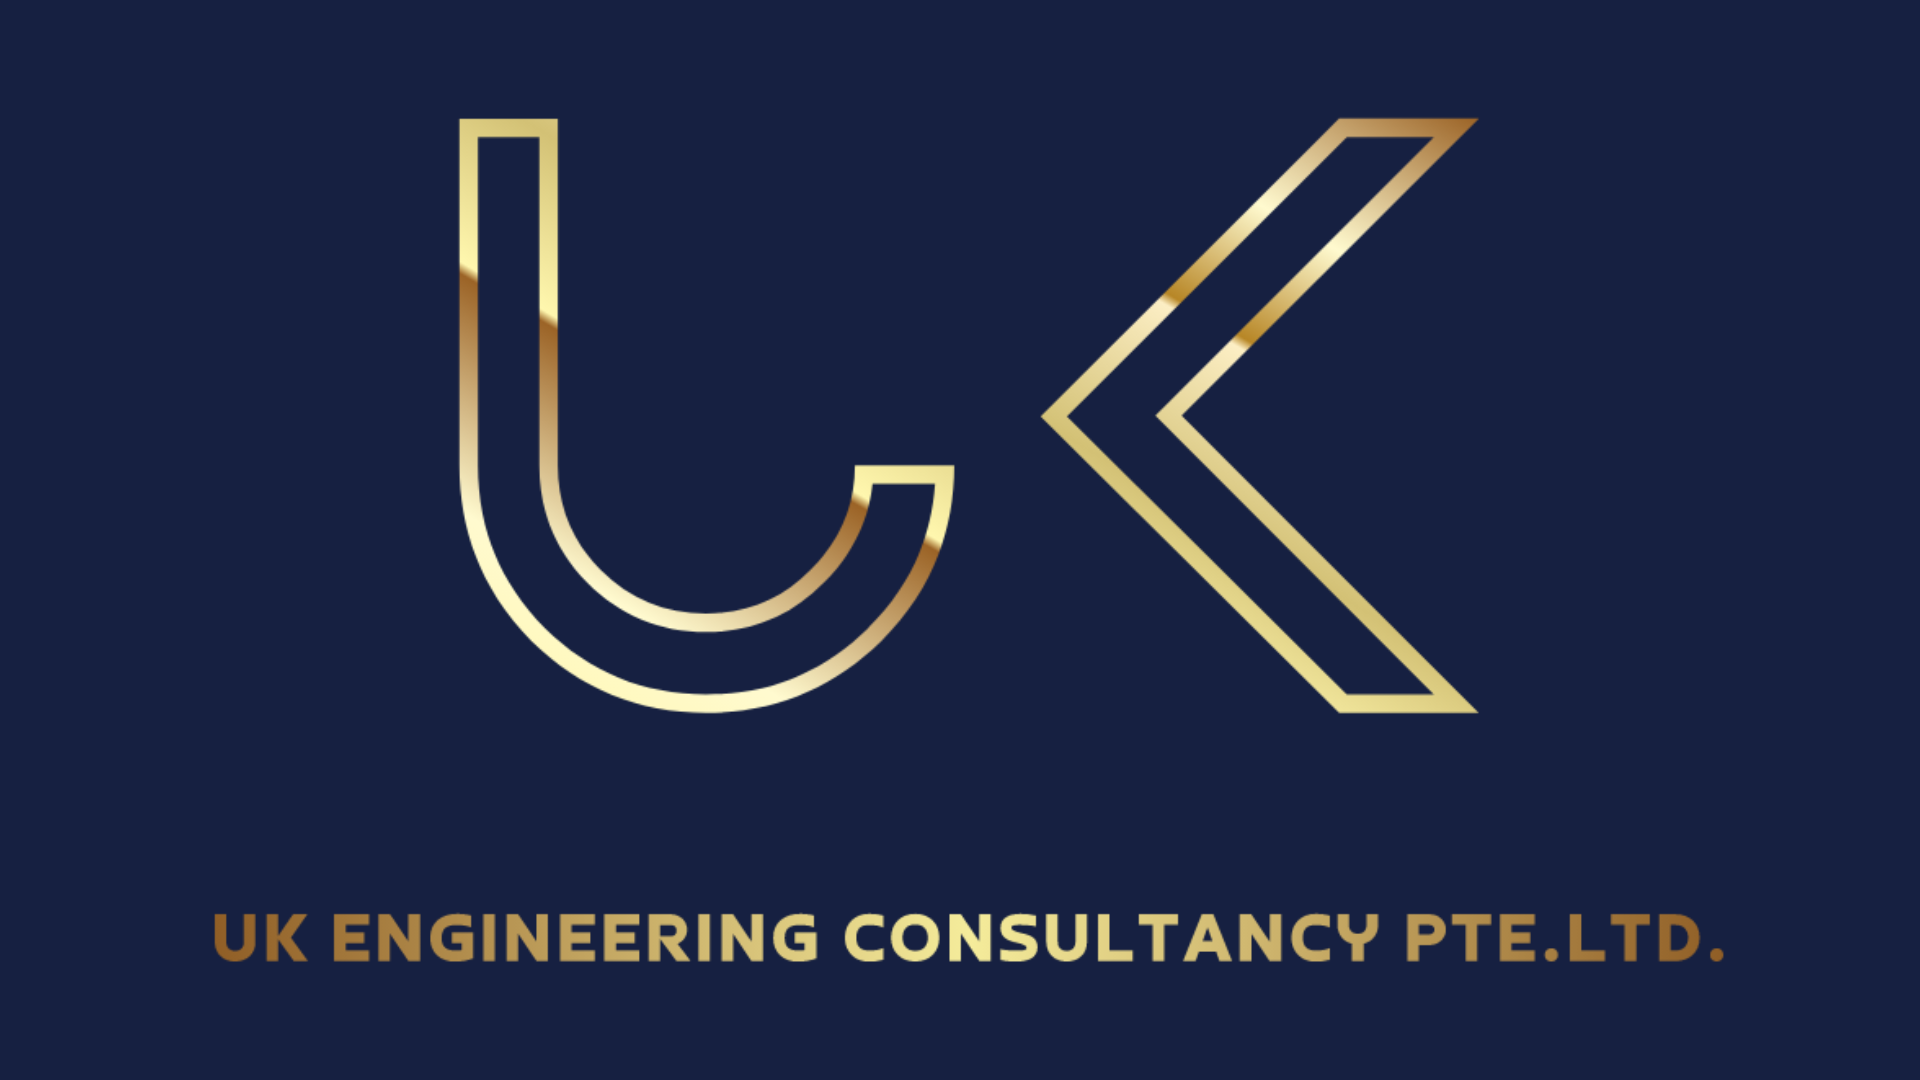 UK Engineering Consultancy Pte. Ltd